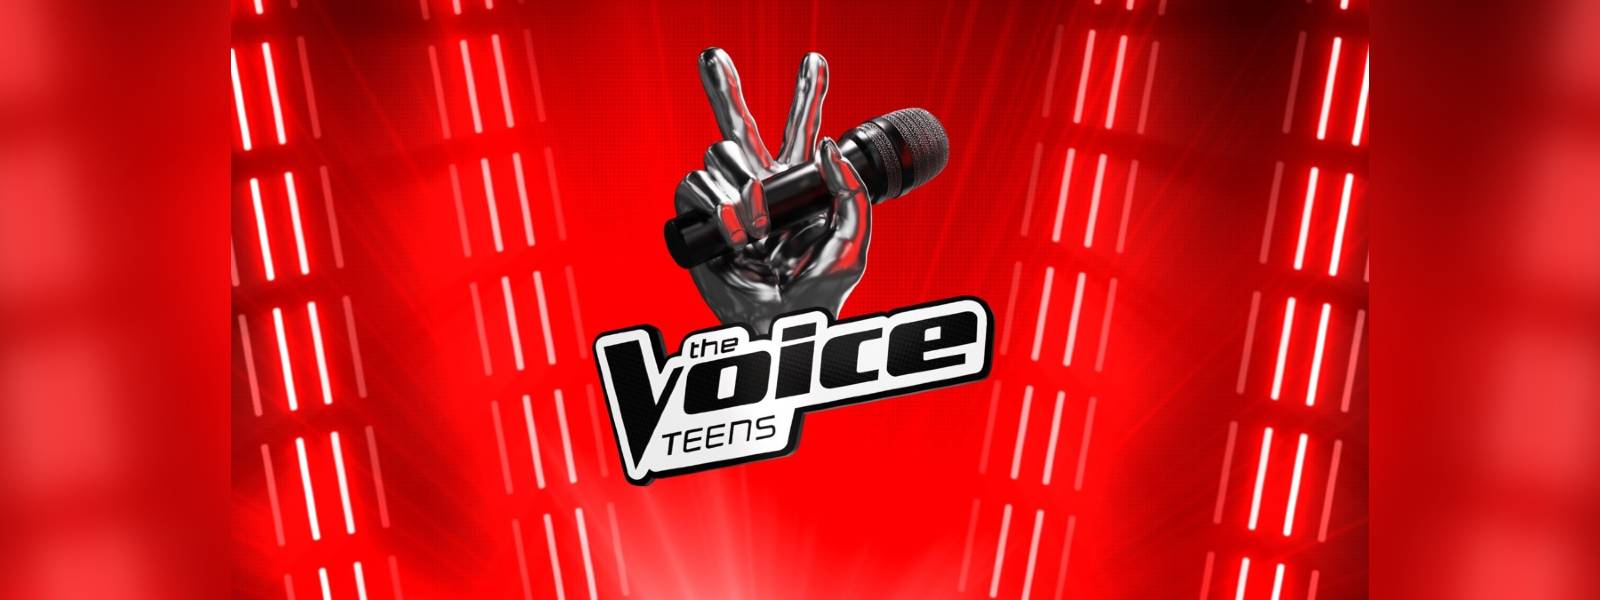 The Voice Teens ඊළඟට මොකද වෙන්නේ